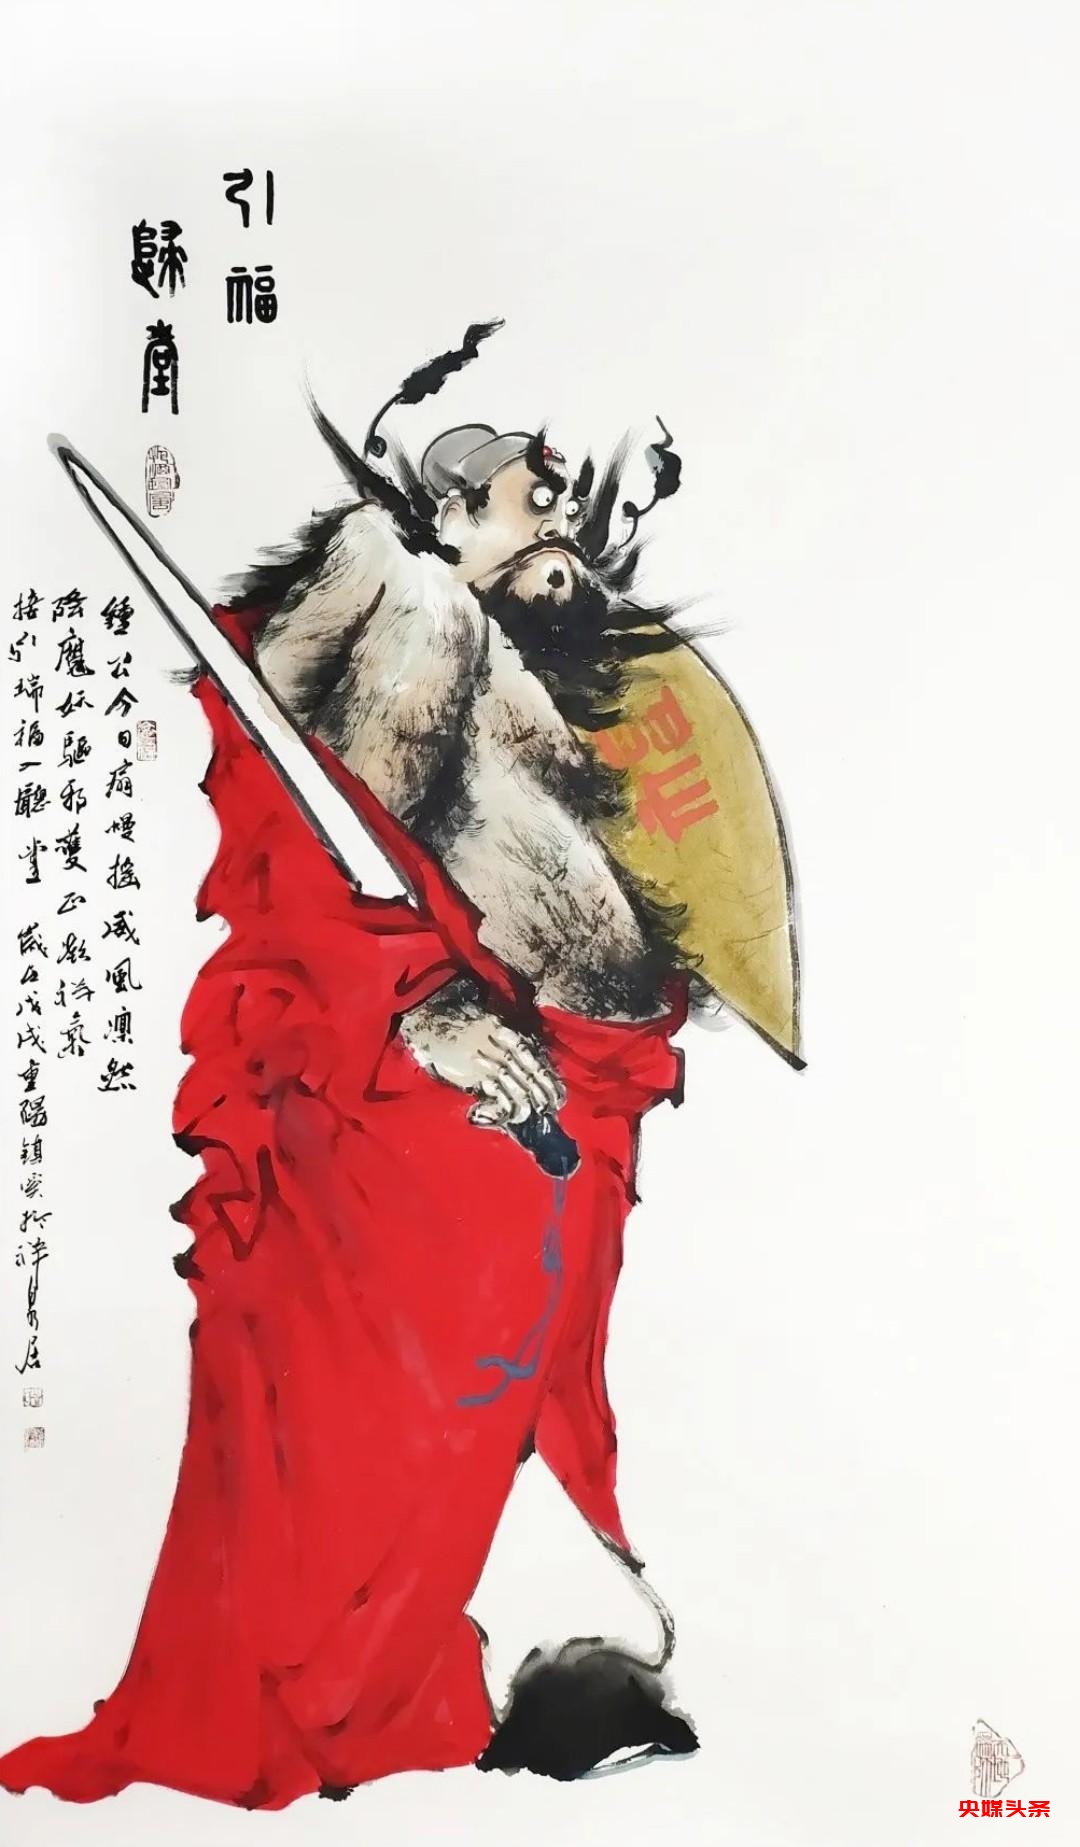 盛世中华 复兴有您 第21届中国当代艺术名家作品展在北京举行